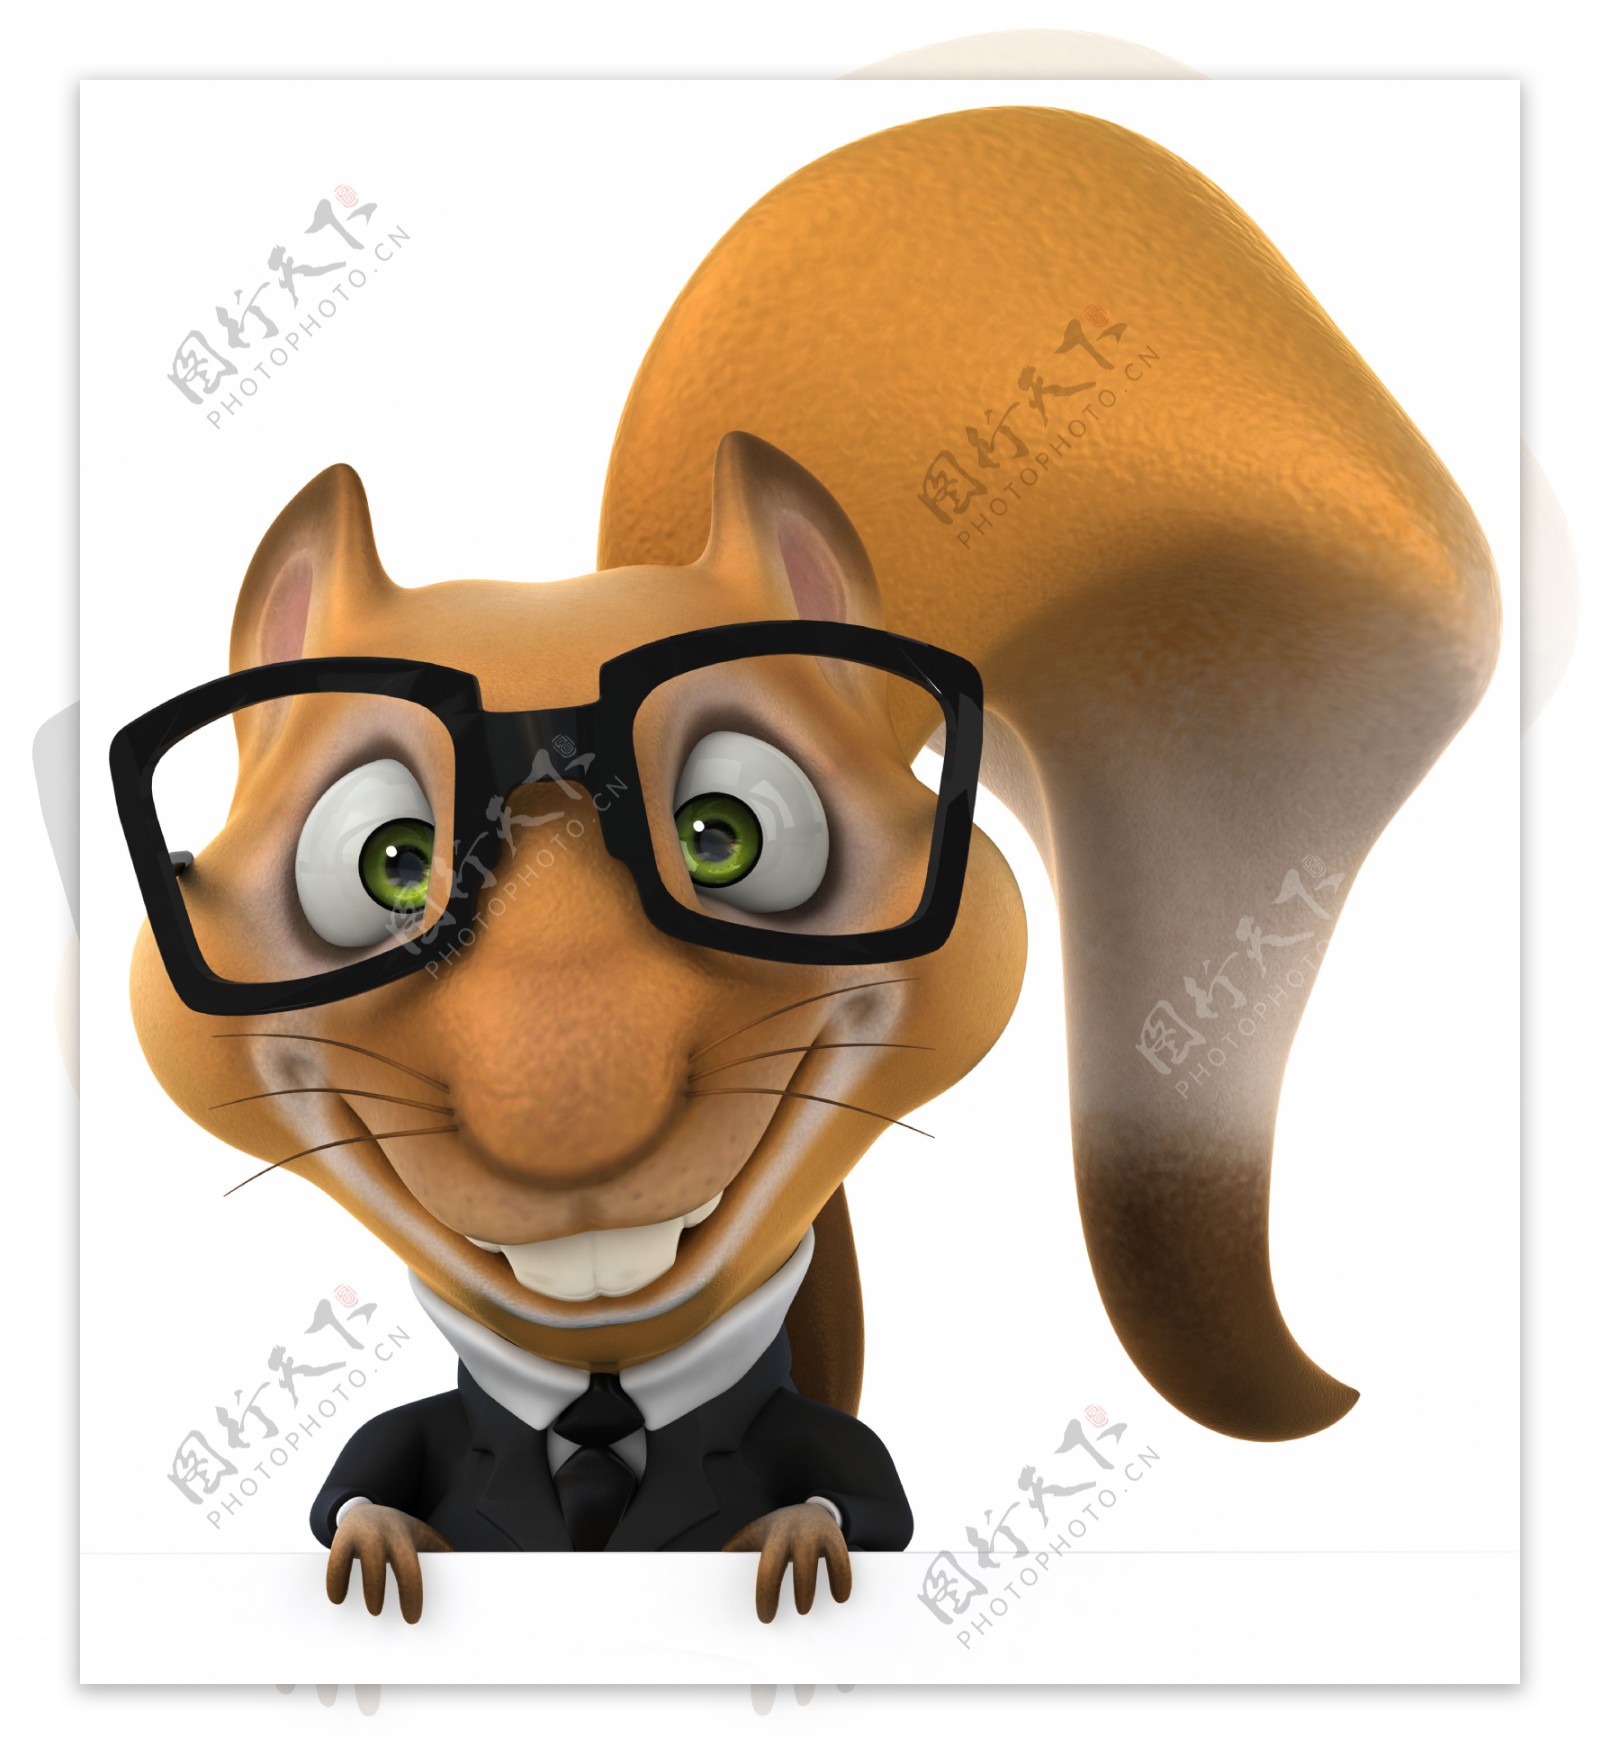 戴眼镜的松鼠3D形象图片